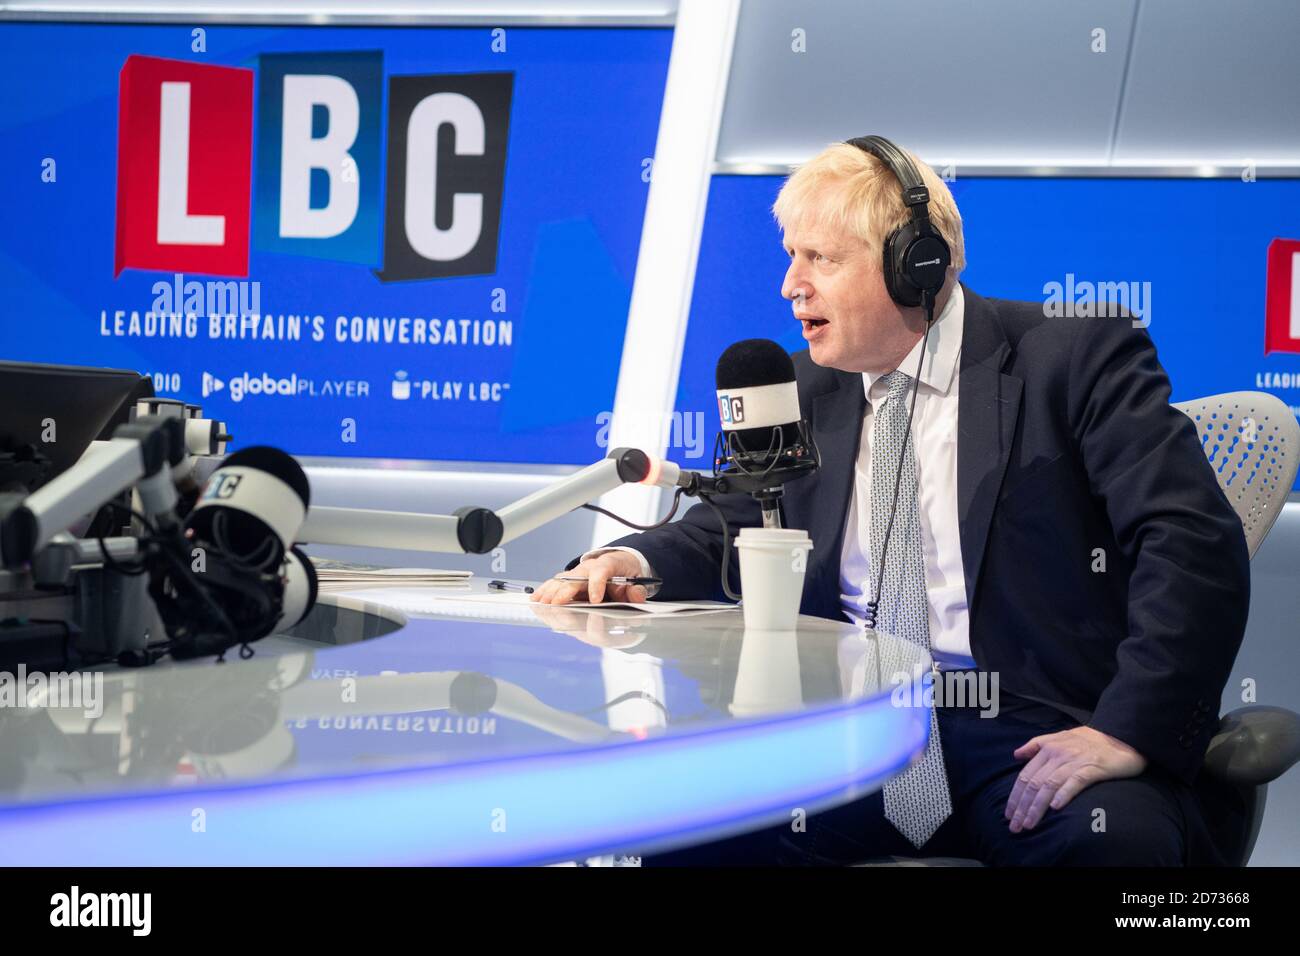 Boris Johnson ha ritratto durante un telefono dal vivo con il presentatore della LBC Nick Ferrari, nei loro studi nel centro di Londra. Data immagine: Martedì 25 giugno 2019. Il credito fotografico dovrebbe essere: Matt Crossick/Empics Foto Stock